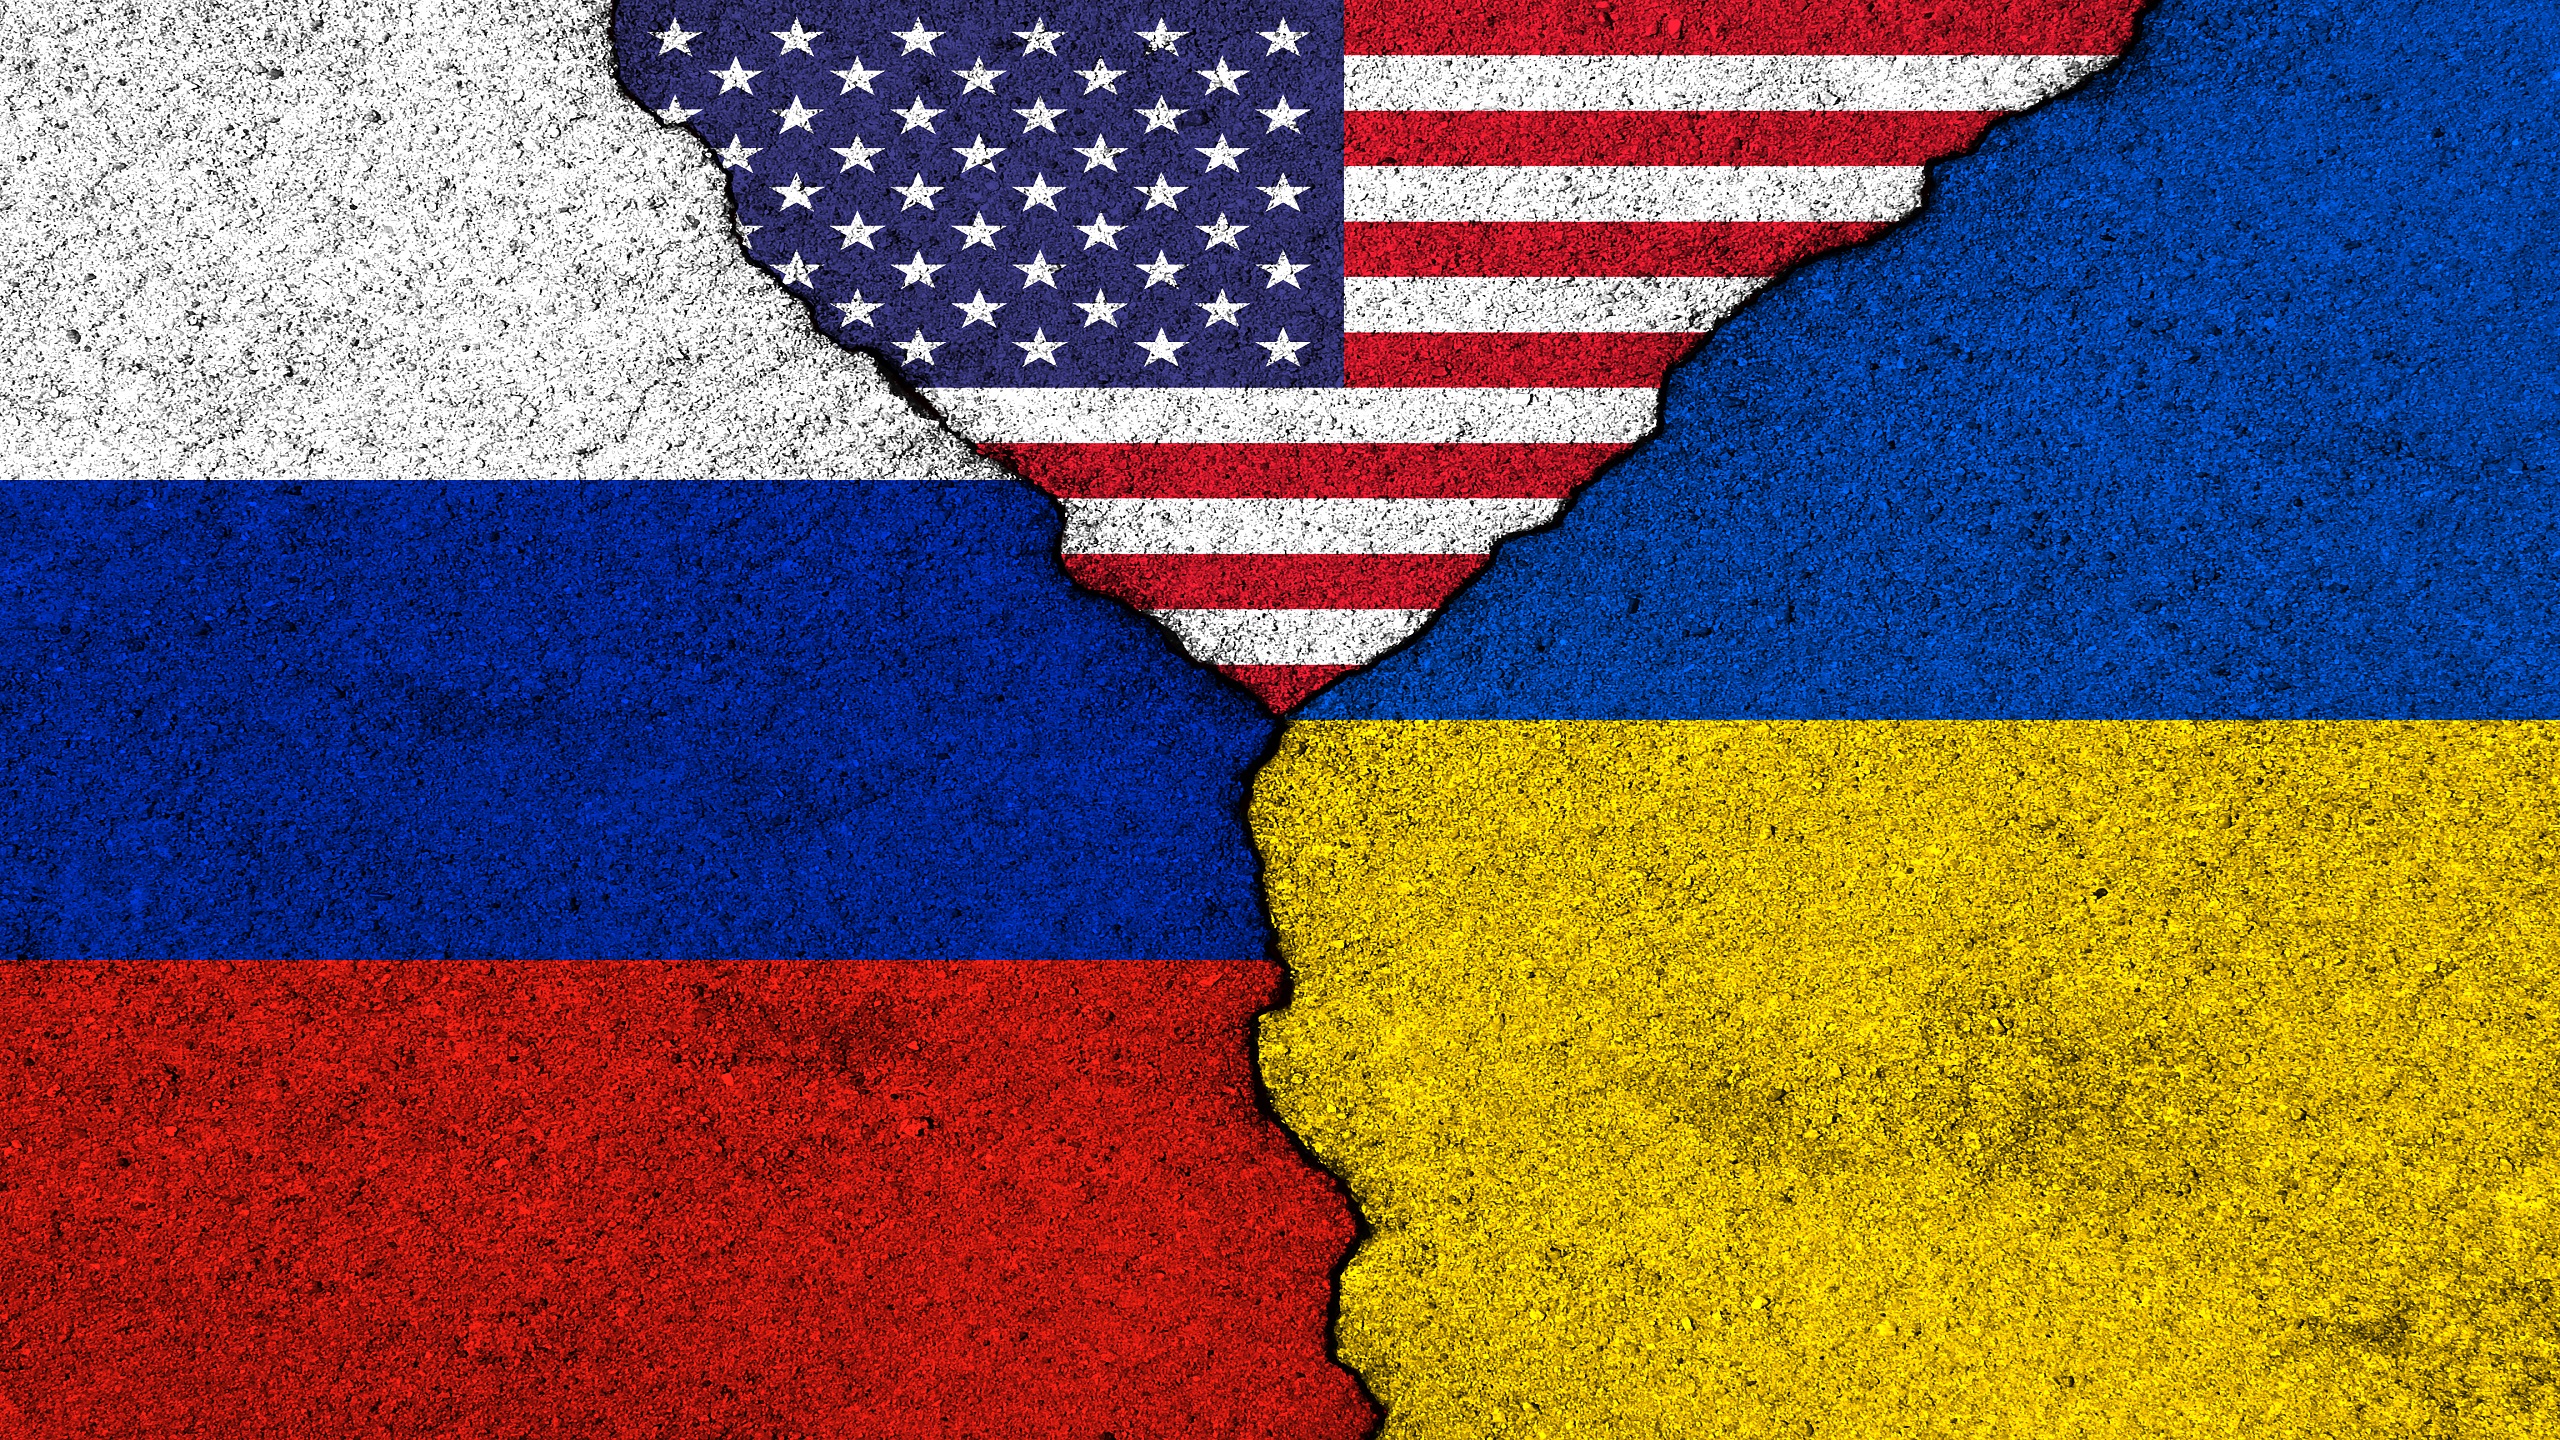 Moskow: hubungan diplomatik dengan Amerika Serikat mungkin berakhir